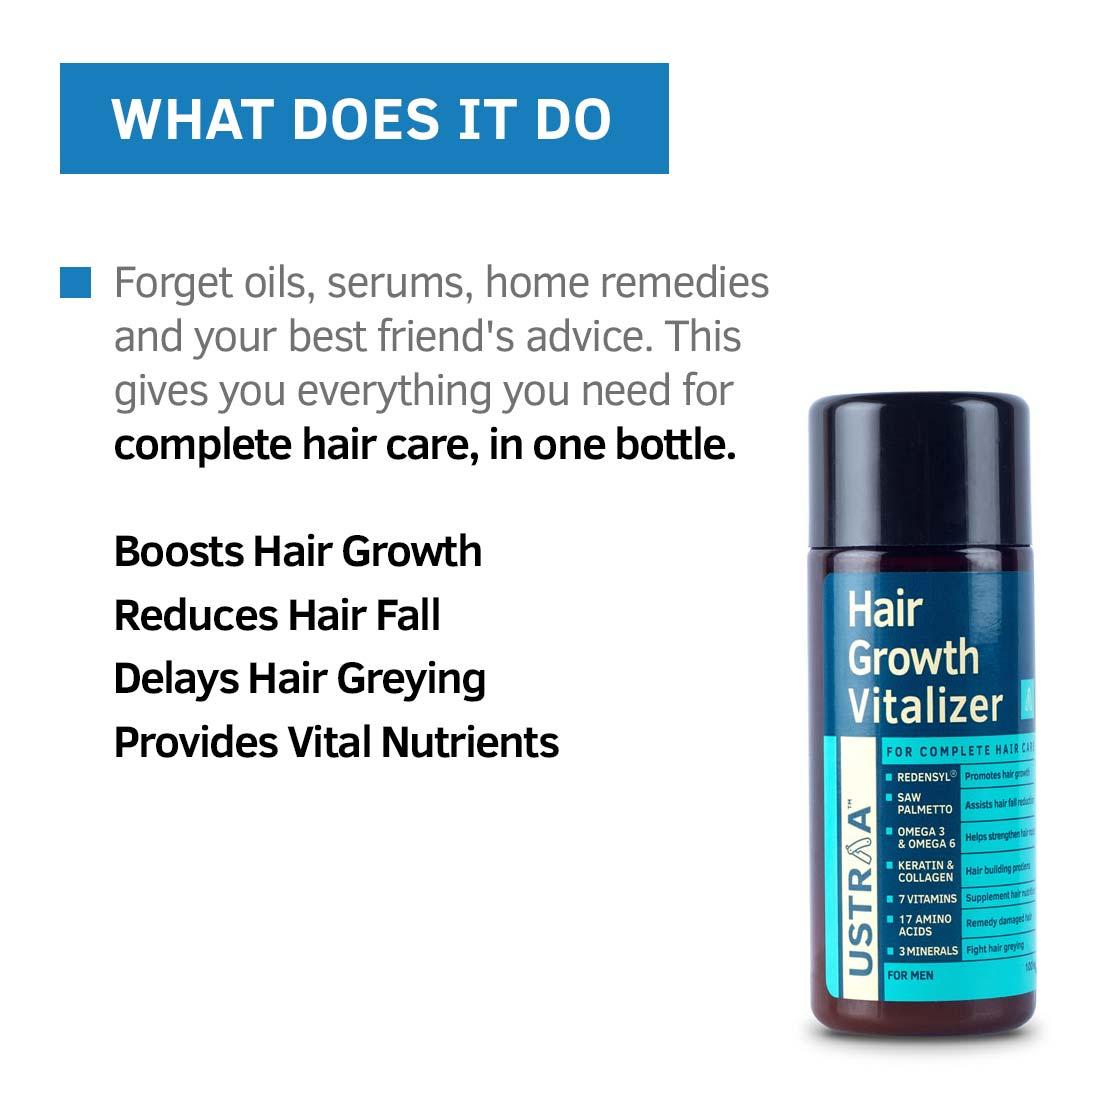 Hair Vitalizer Kit - Hair Growth Vitalizer & Shampoo